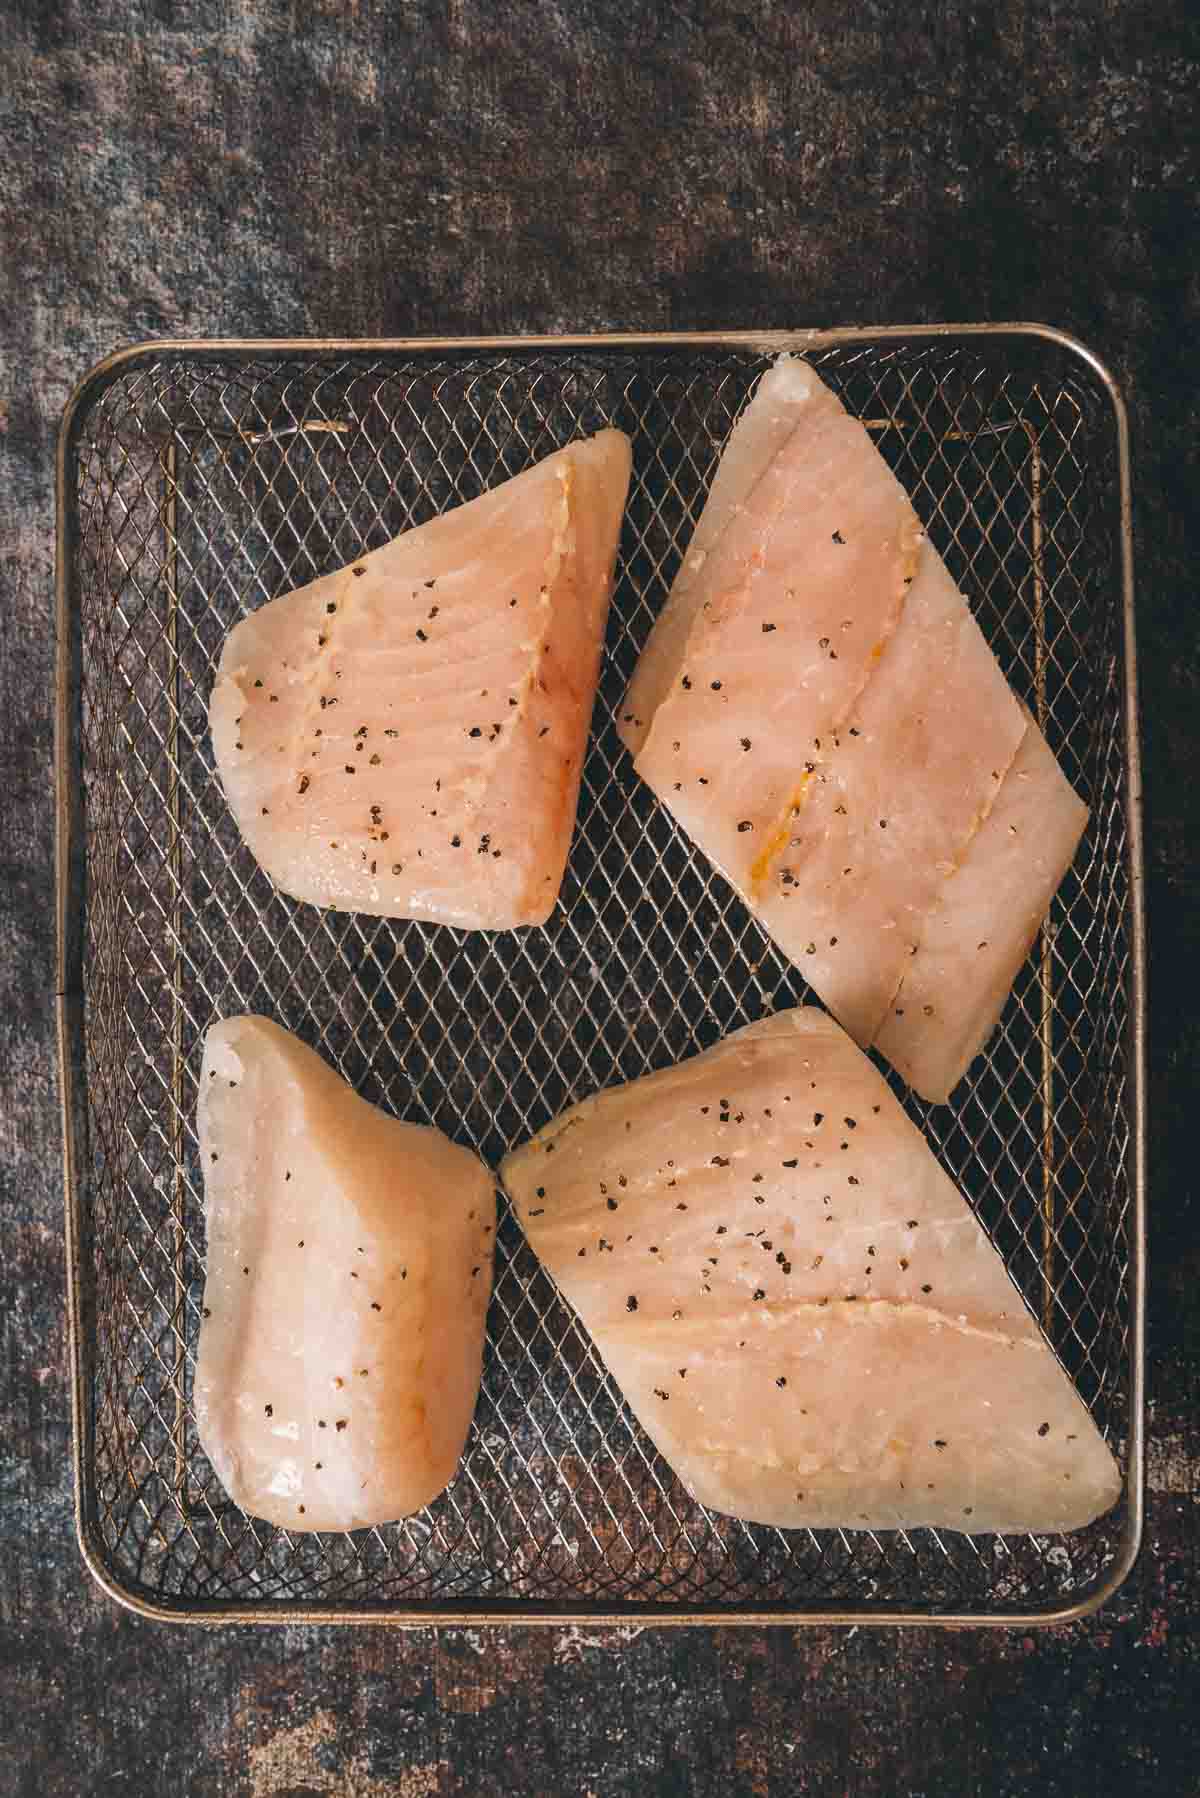 Cod filets in a air fryer basket.